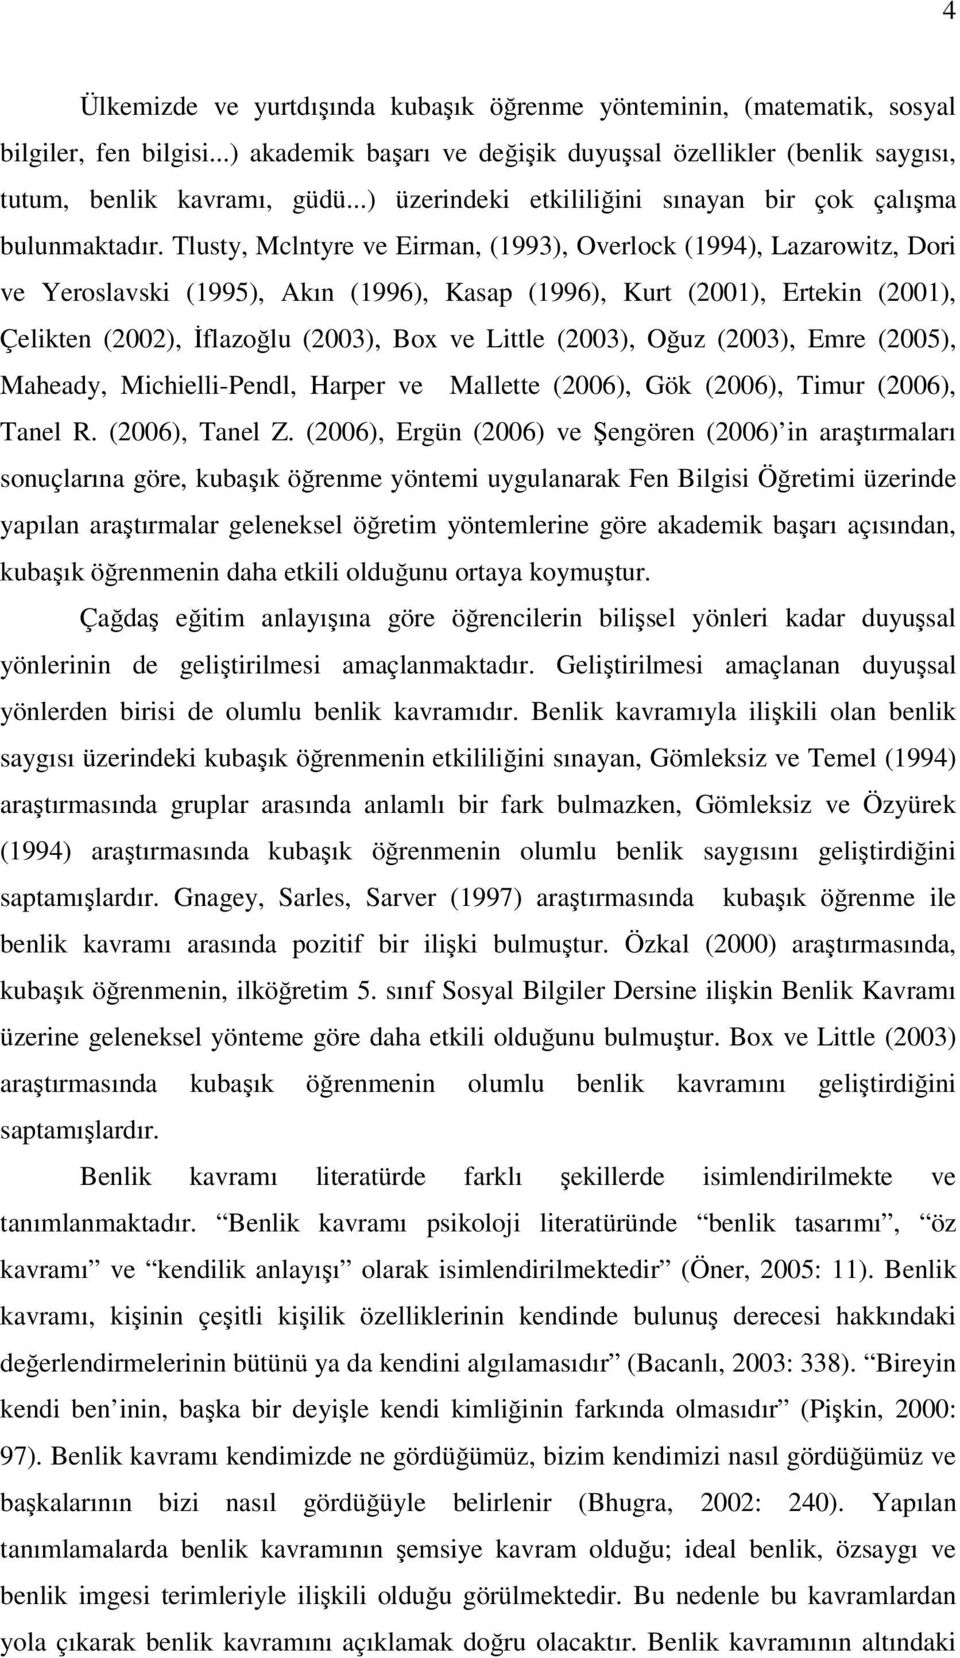 Tlusty, Mclntyre ve Eirman, (1993), Overlock (1994), Lazarowitz, Dori ve Yeroslavski (1995), Akın (1996), Kasap (1996), Kurt (2001), Ertekin (2001), Çelikten (2002), İflazoğlu (2003), Box ve Little